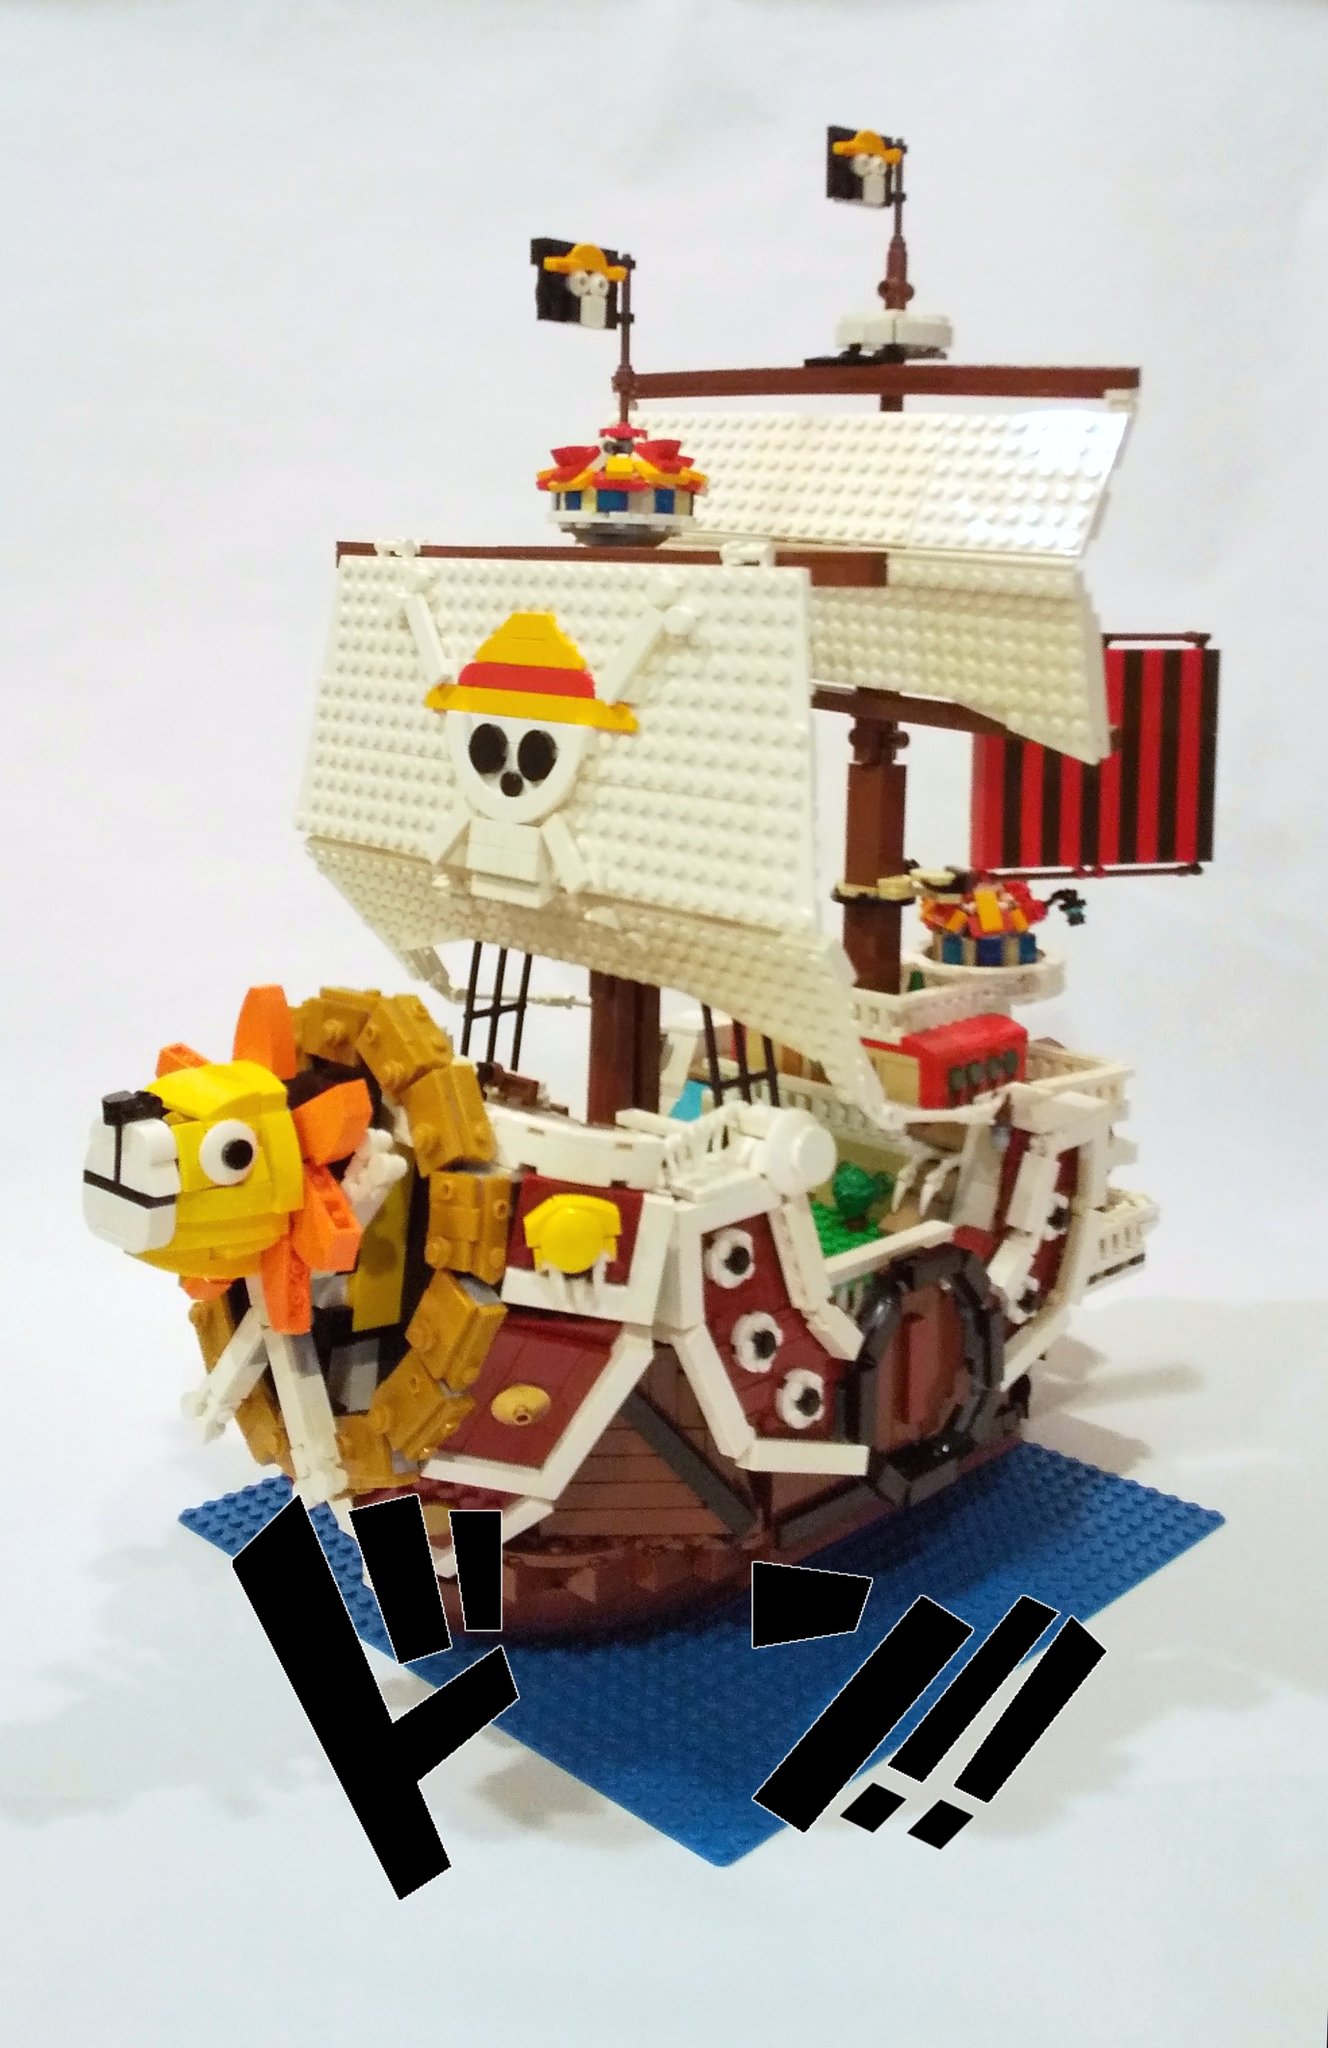 Mull レゴで One Piece より サウザンド サニー号 を作りました 大きい分妥協してしまった部分もありますが 楽しく組めました 写真はリプ欄に レゴ Lego Onepiece ワンピース サウザンド サニー号 T Co Ehtpwf8u9l Twitter